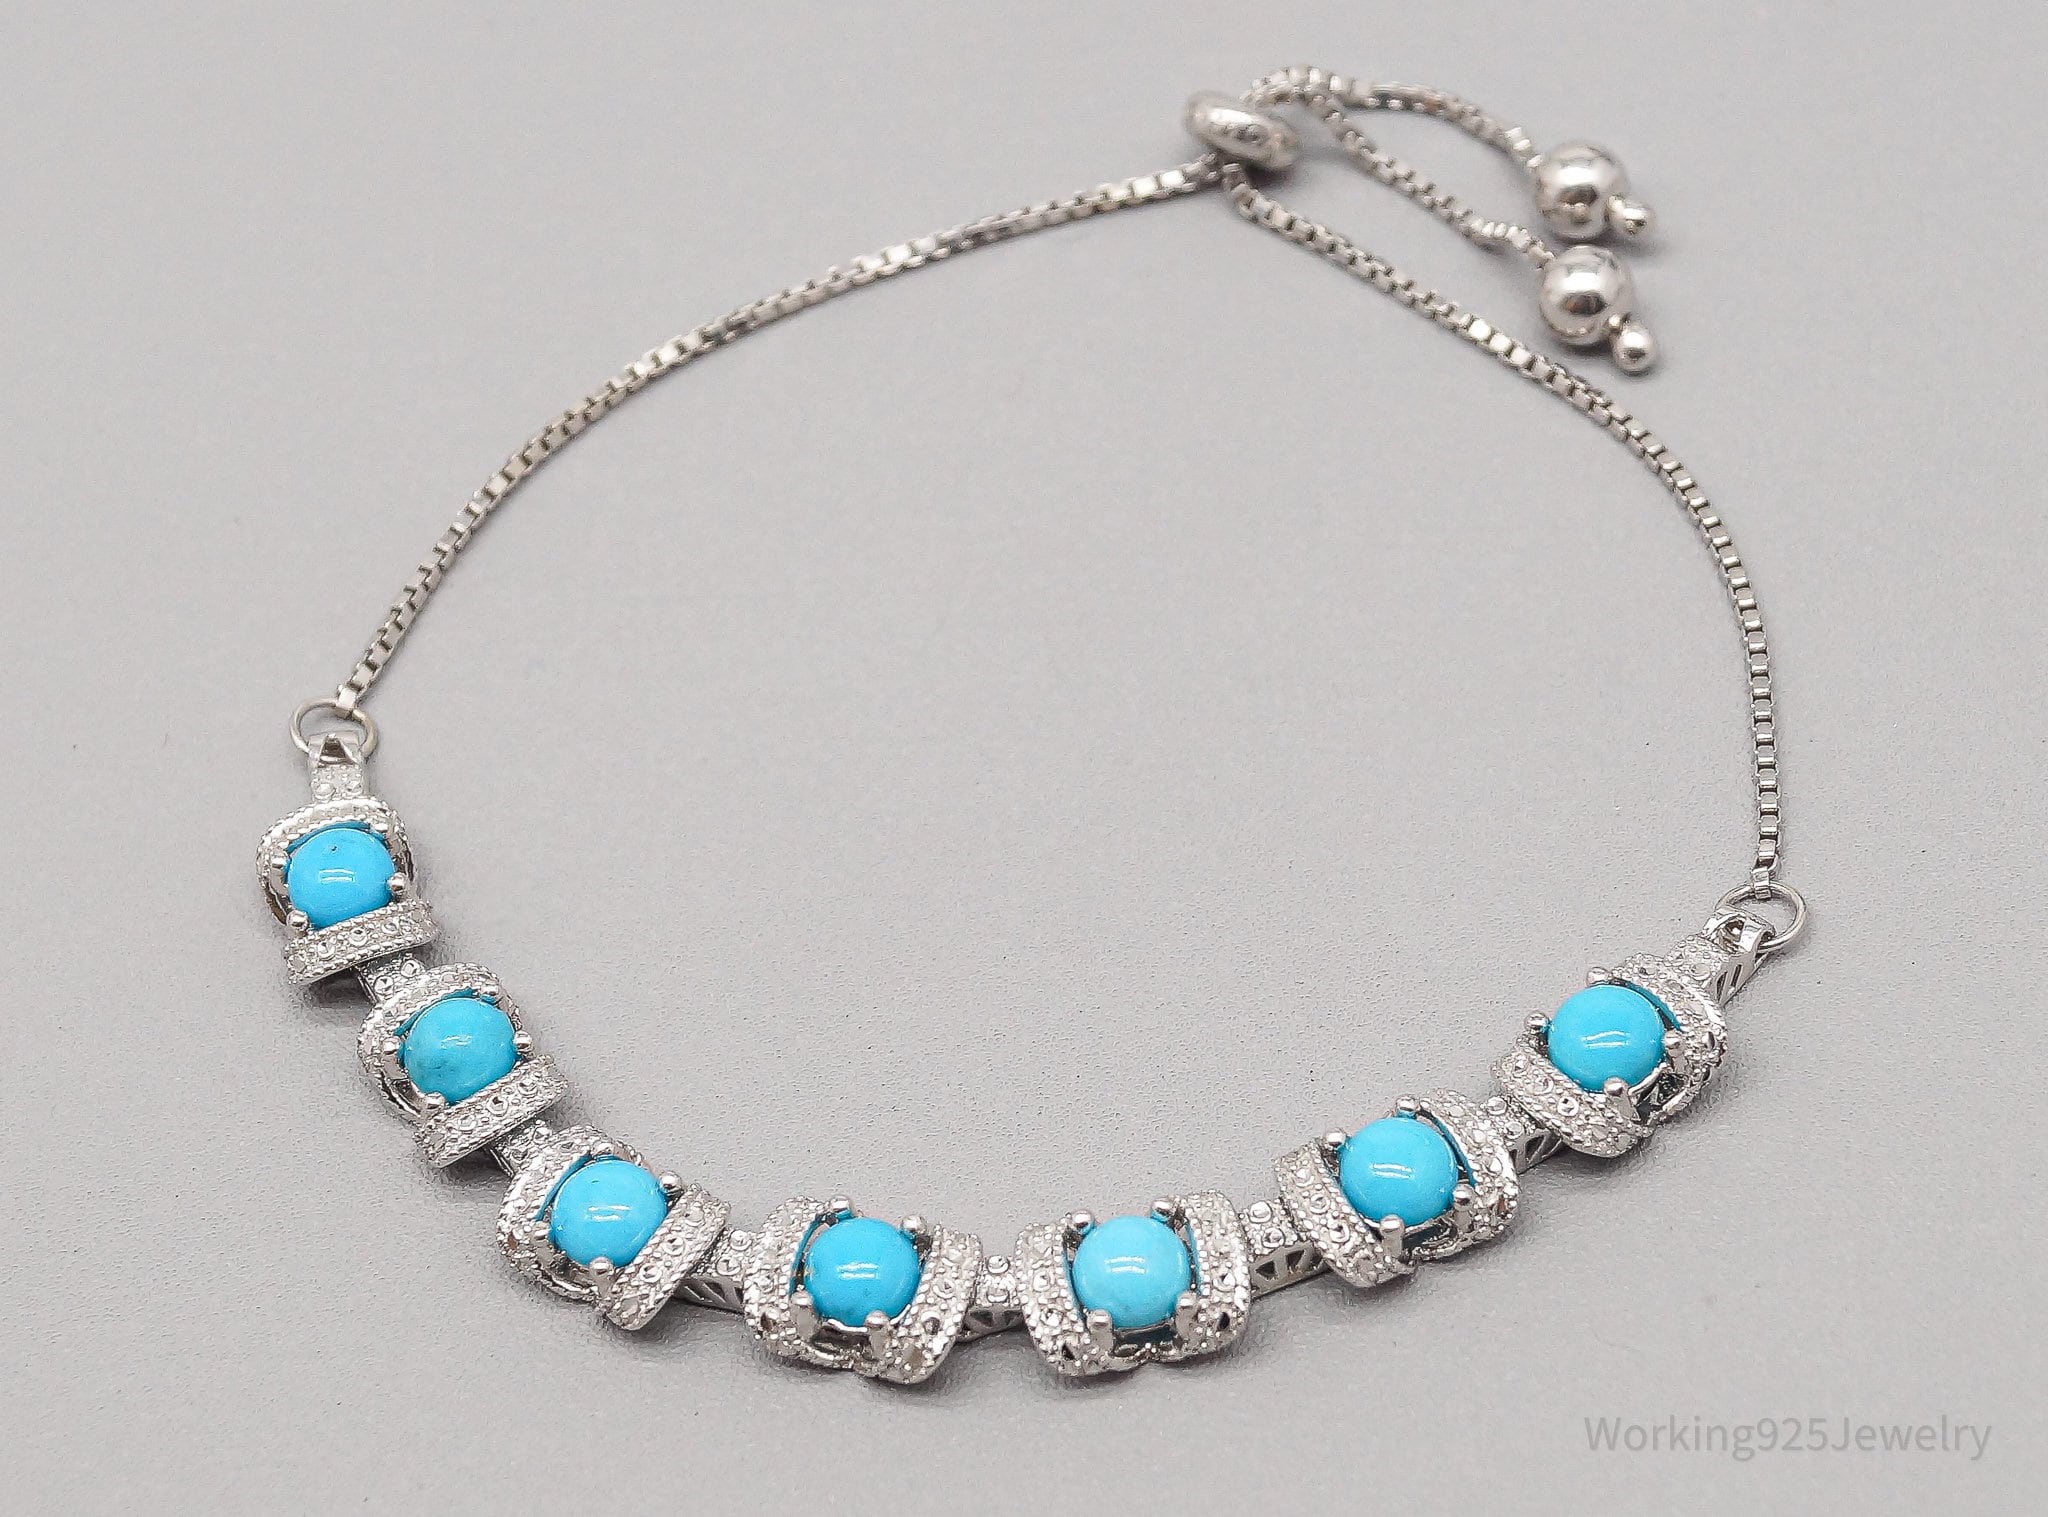 Vintage Blue Turquoise Sterling Silver Adjustable Bracelet / Anklet - 9 7/8"